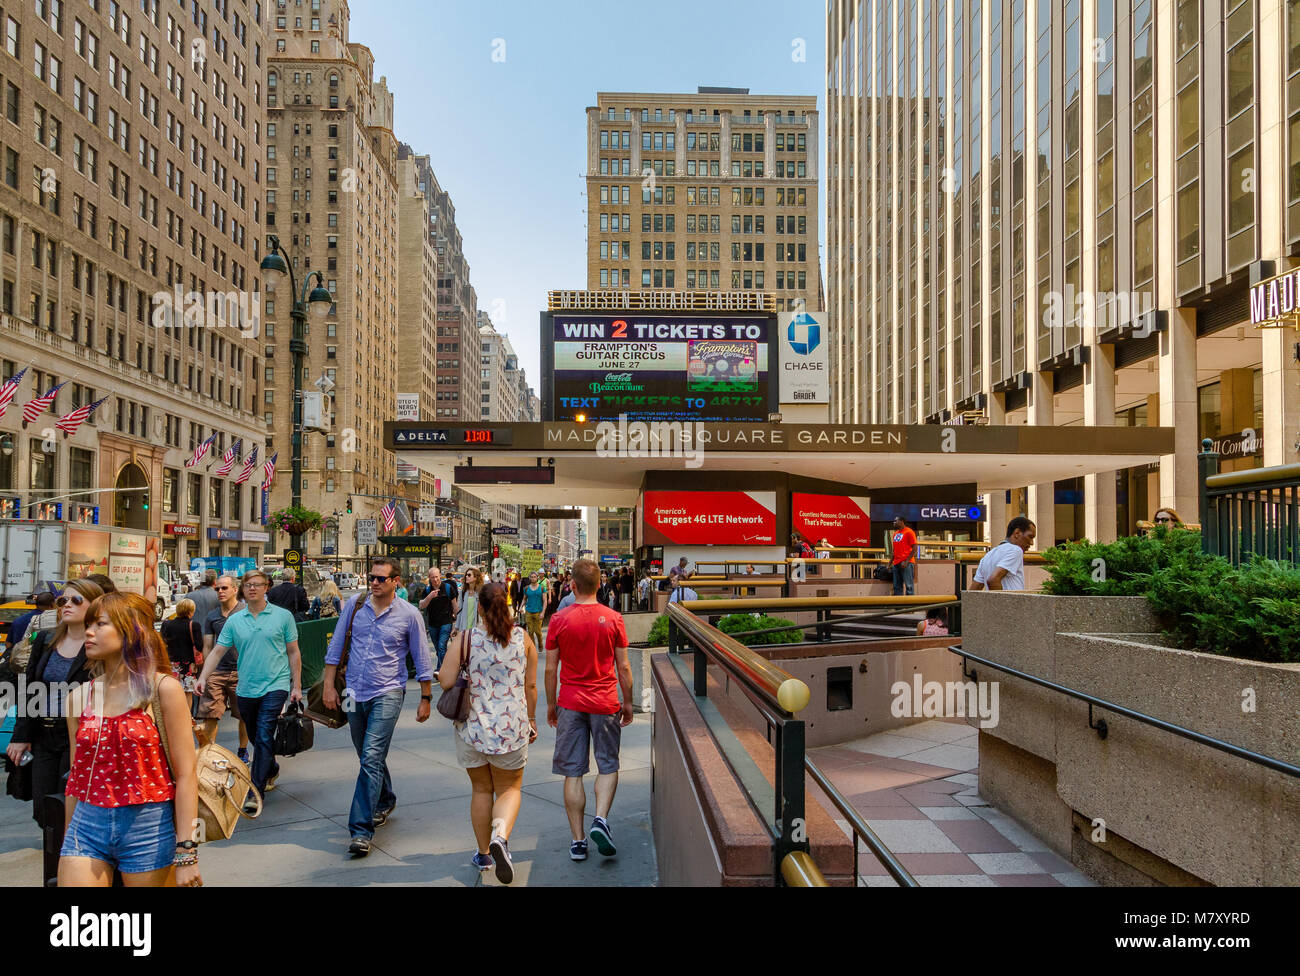 Le persone che camminano lungo la 7th Avenue oltrepassano il Madison Square Garden, un'arena polivalente al coperto nel centro di Manhattan, New York City Foto Stock